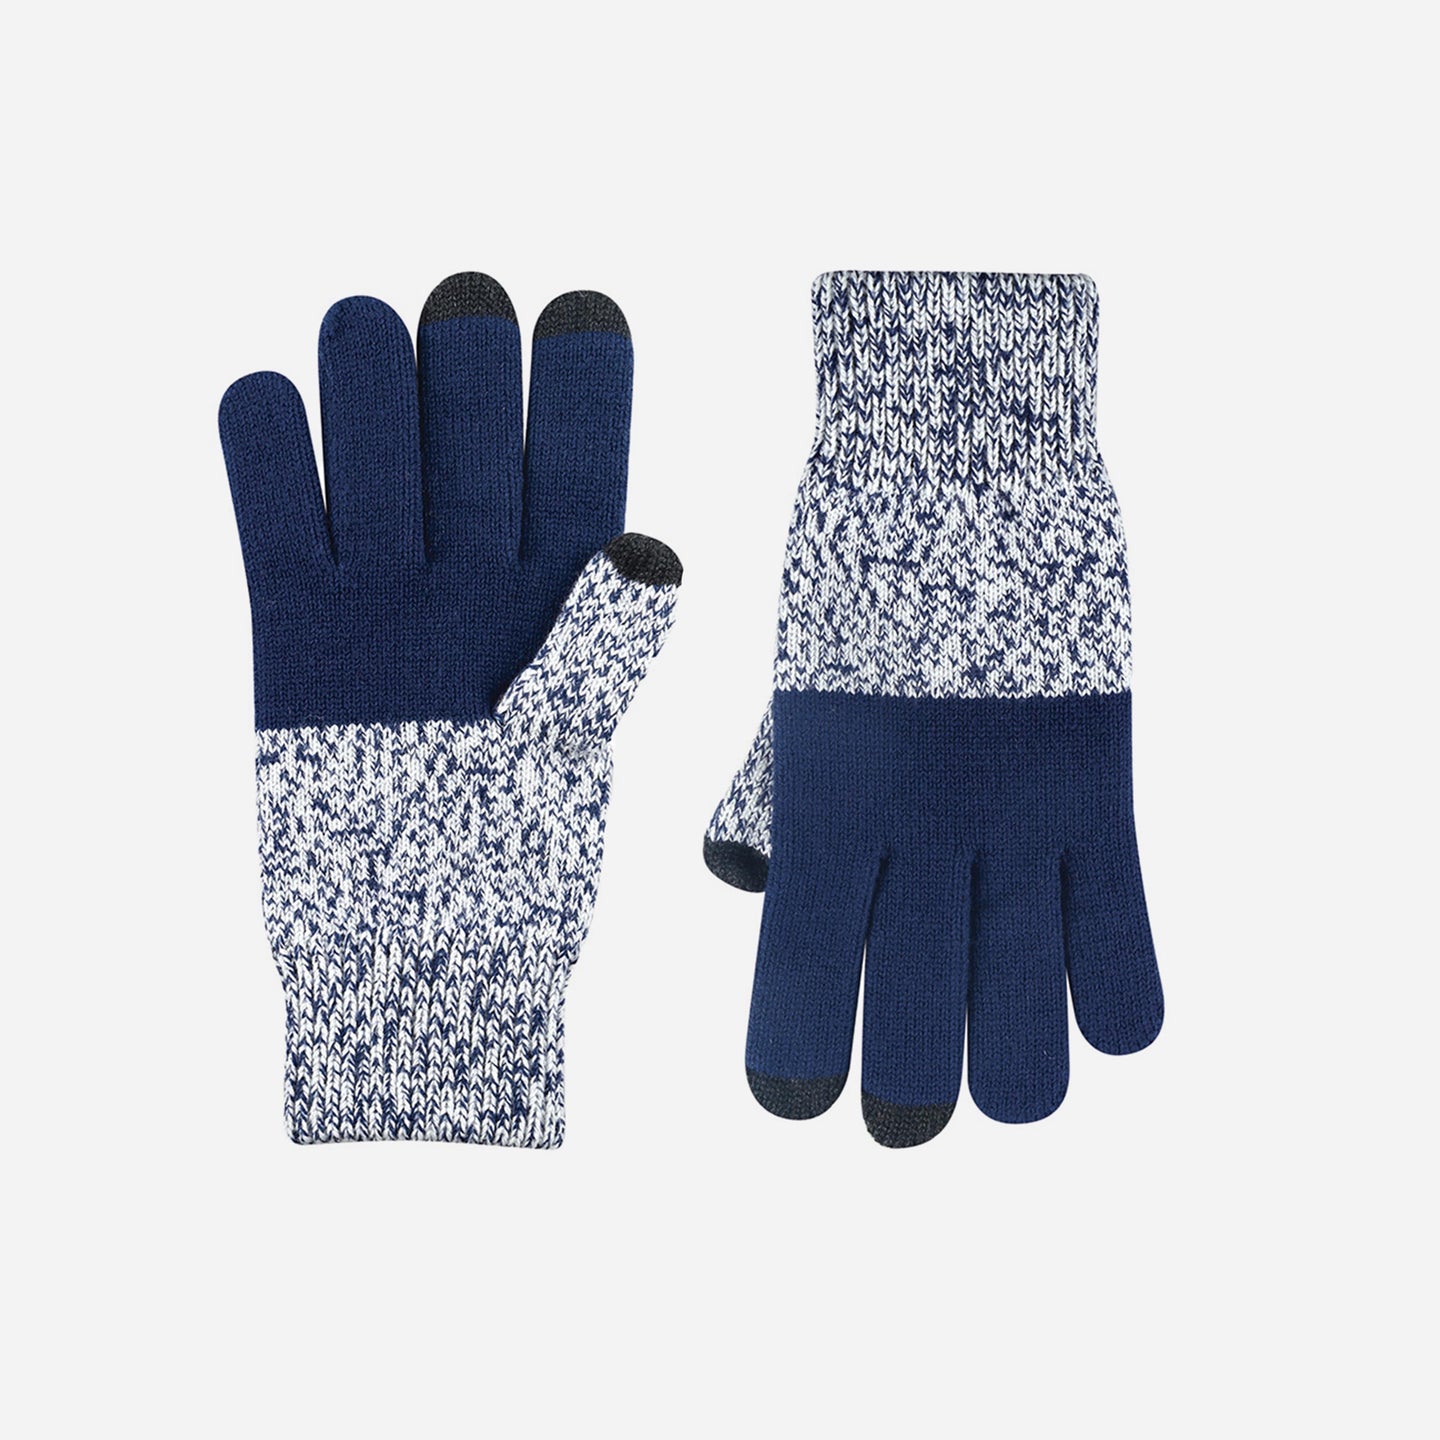 Mens Touchscreen Gloves